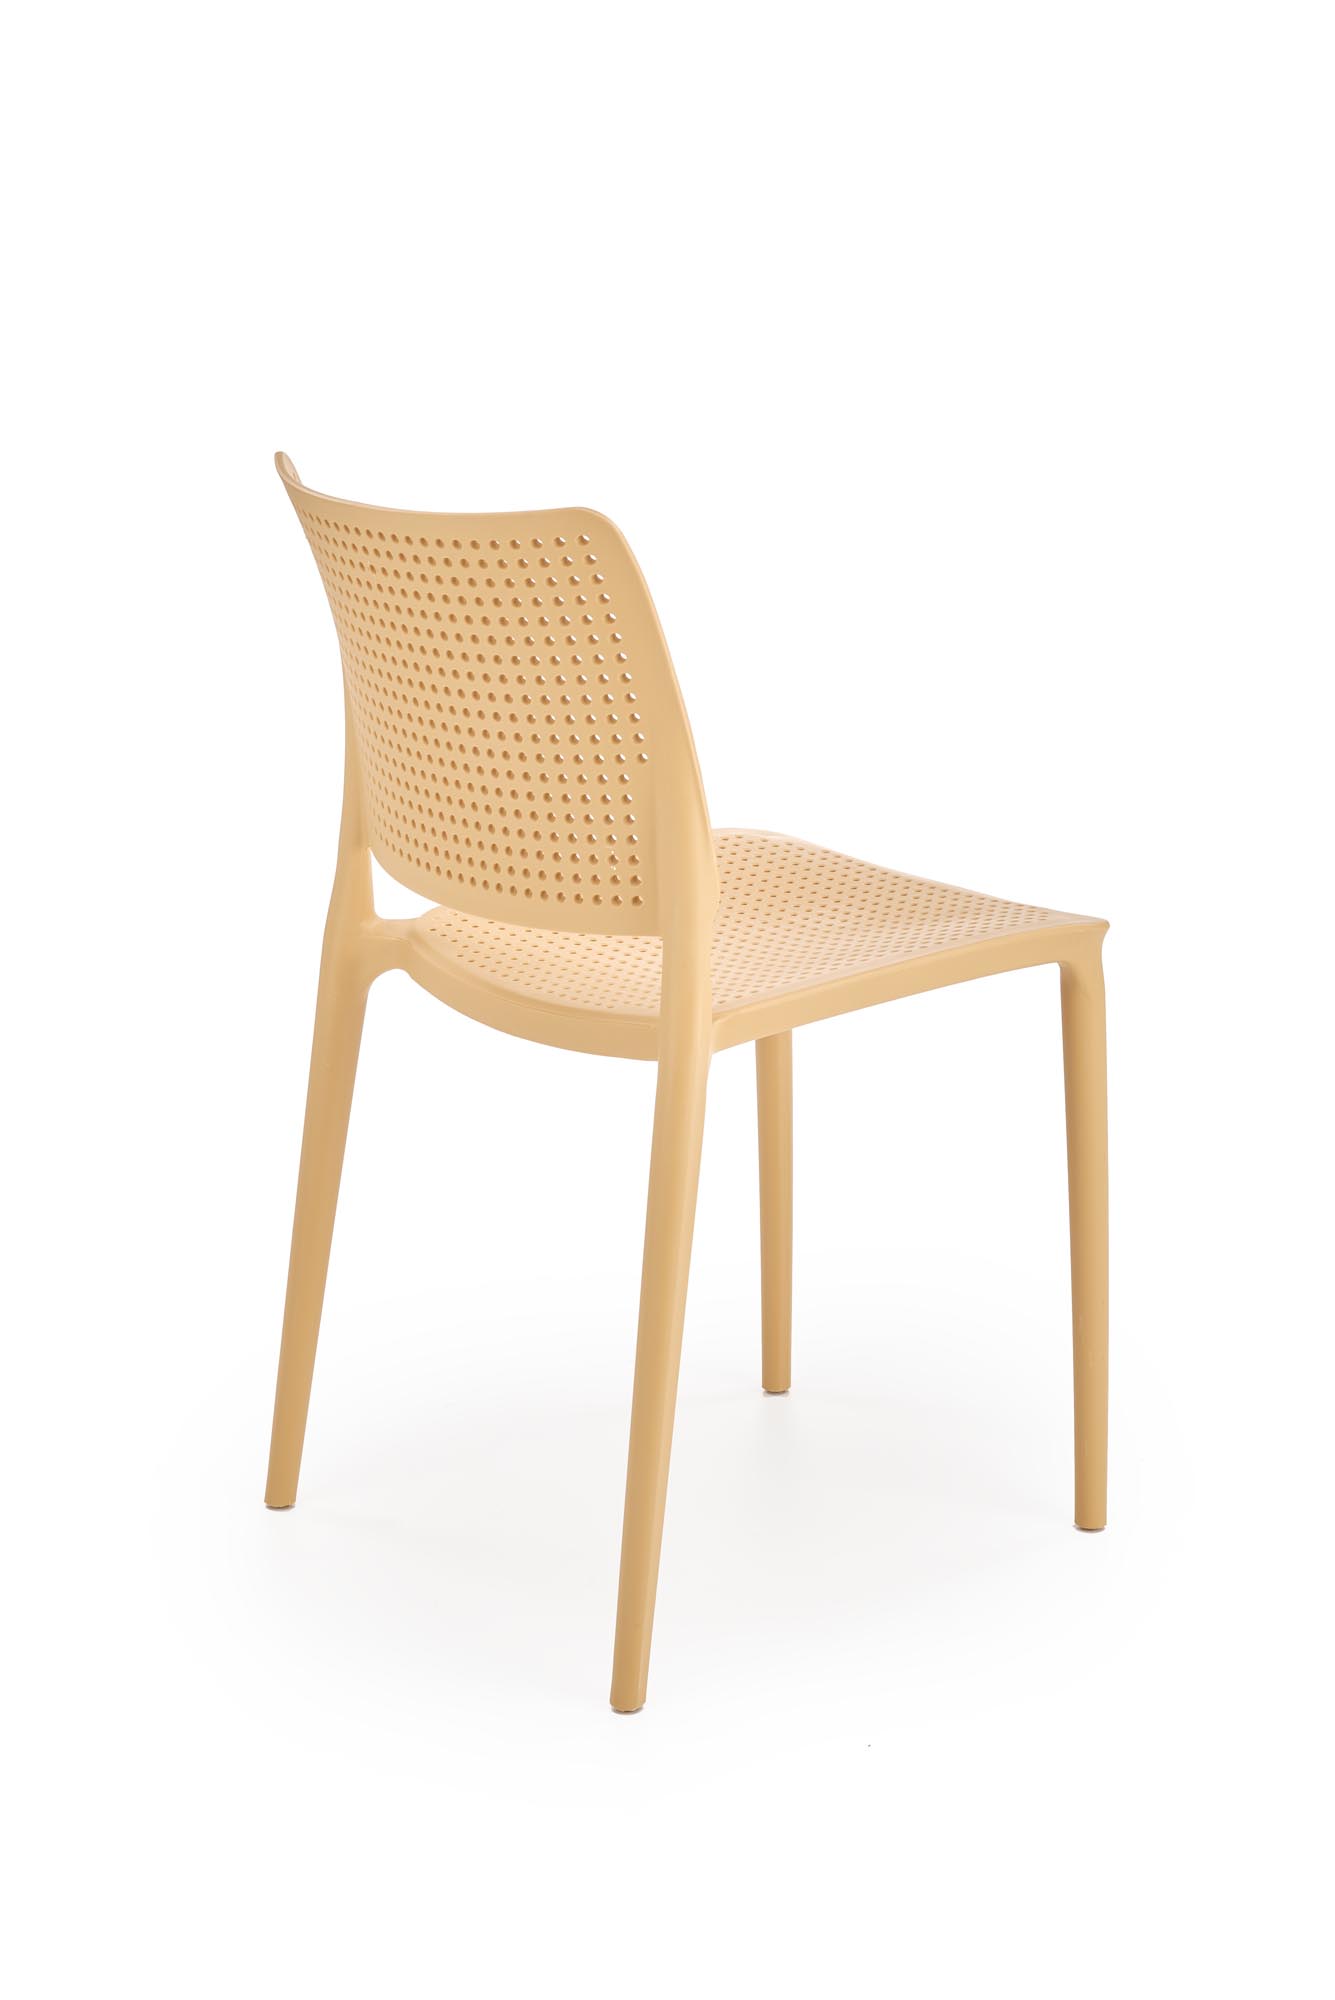 Scaun plastic K514 - portocaliu  Židle z tworzywa k514 - Oranžový